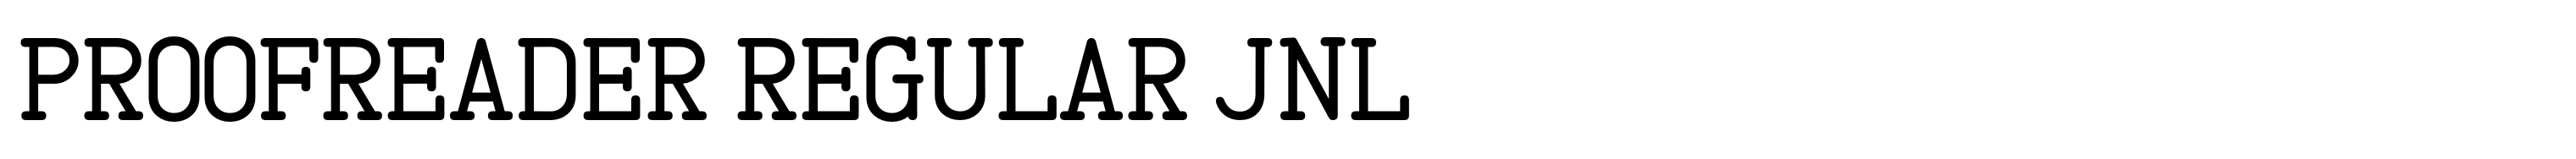 Proofreader Regular JNL